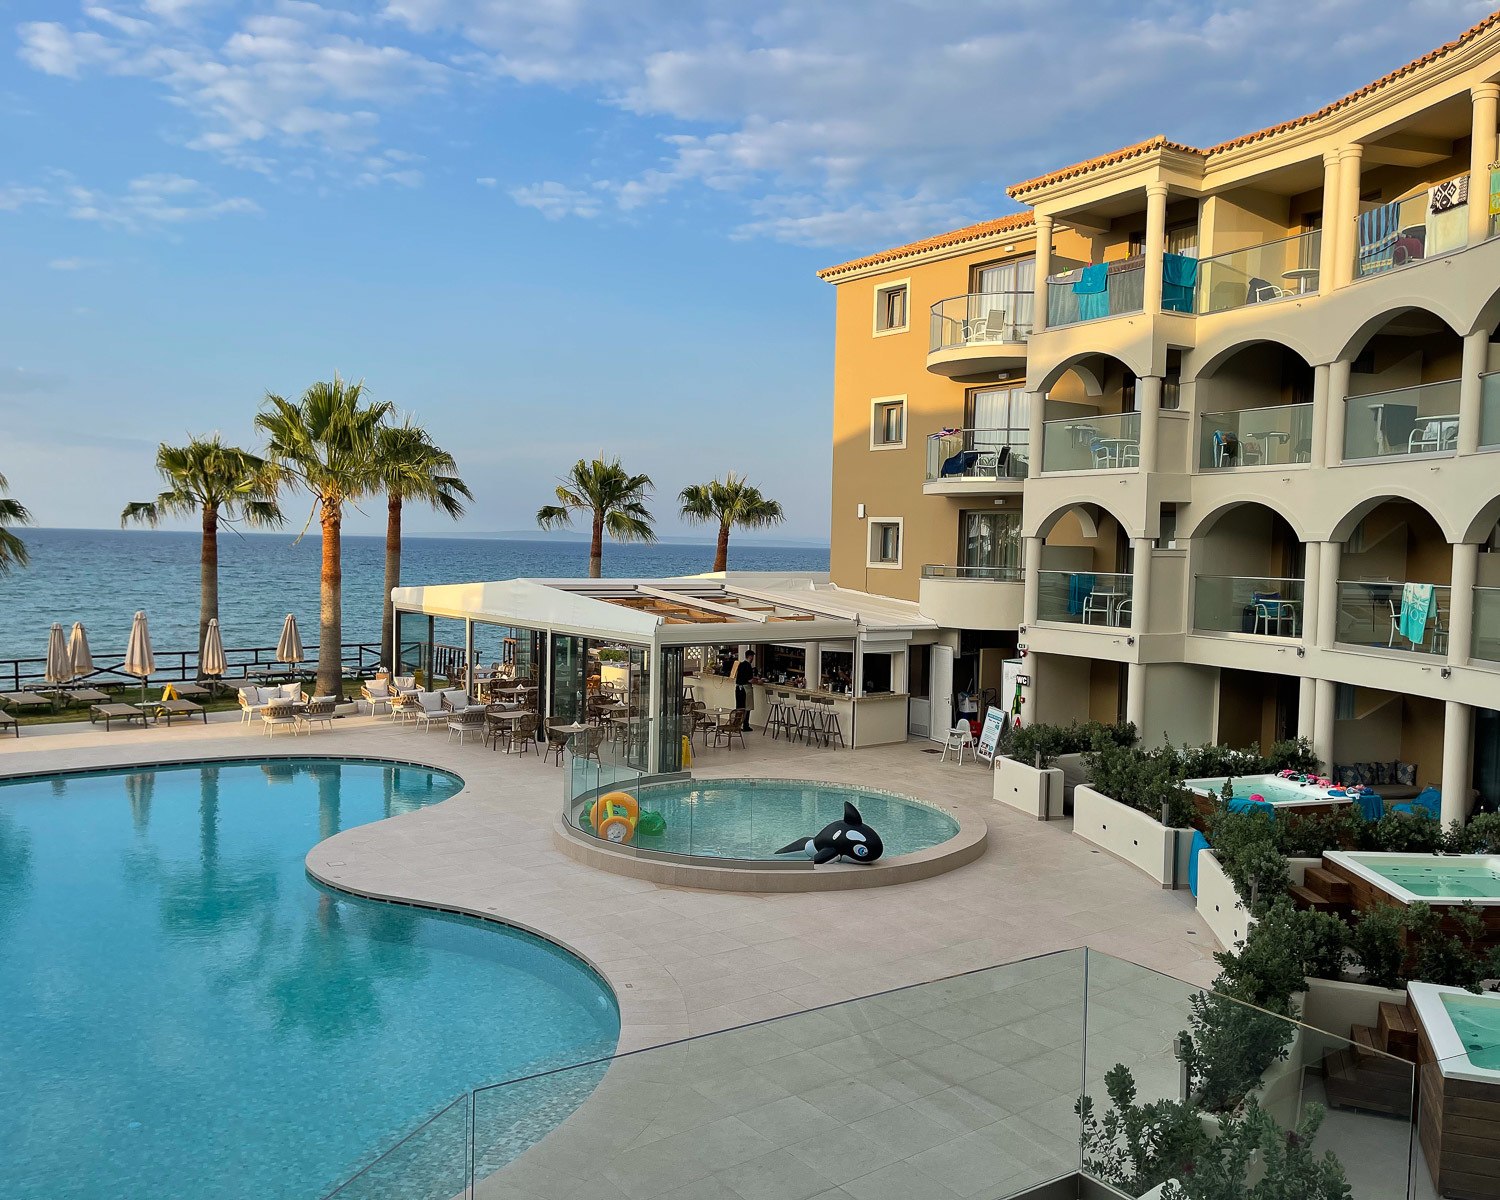 Windmill Bay Hotel – 4 star seaside hotel in Zakynthos, Greece